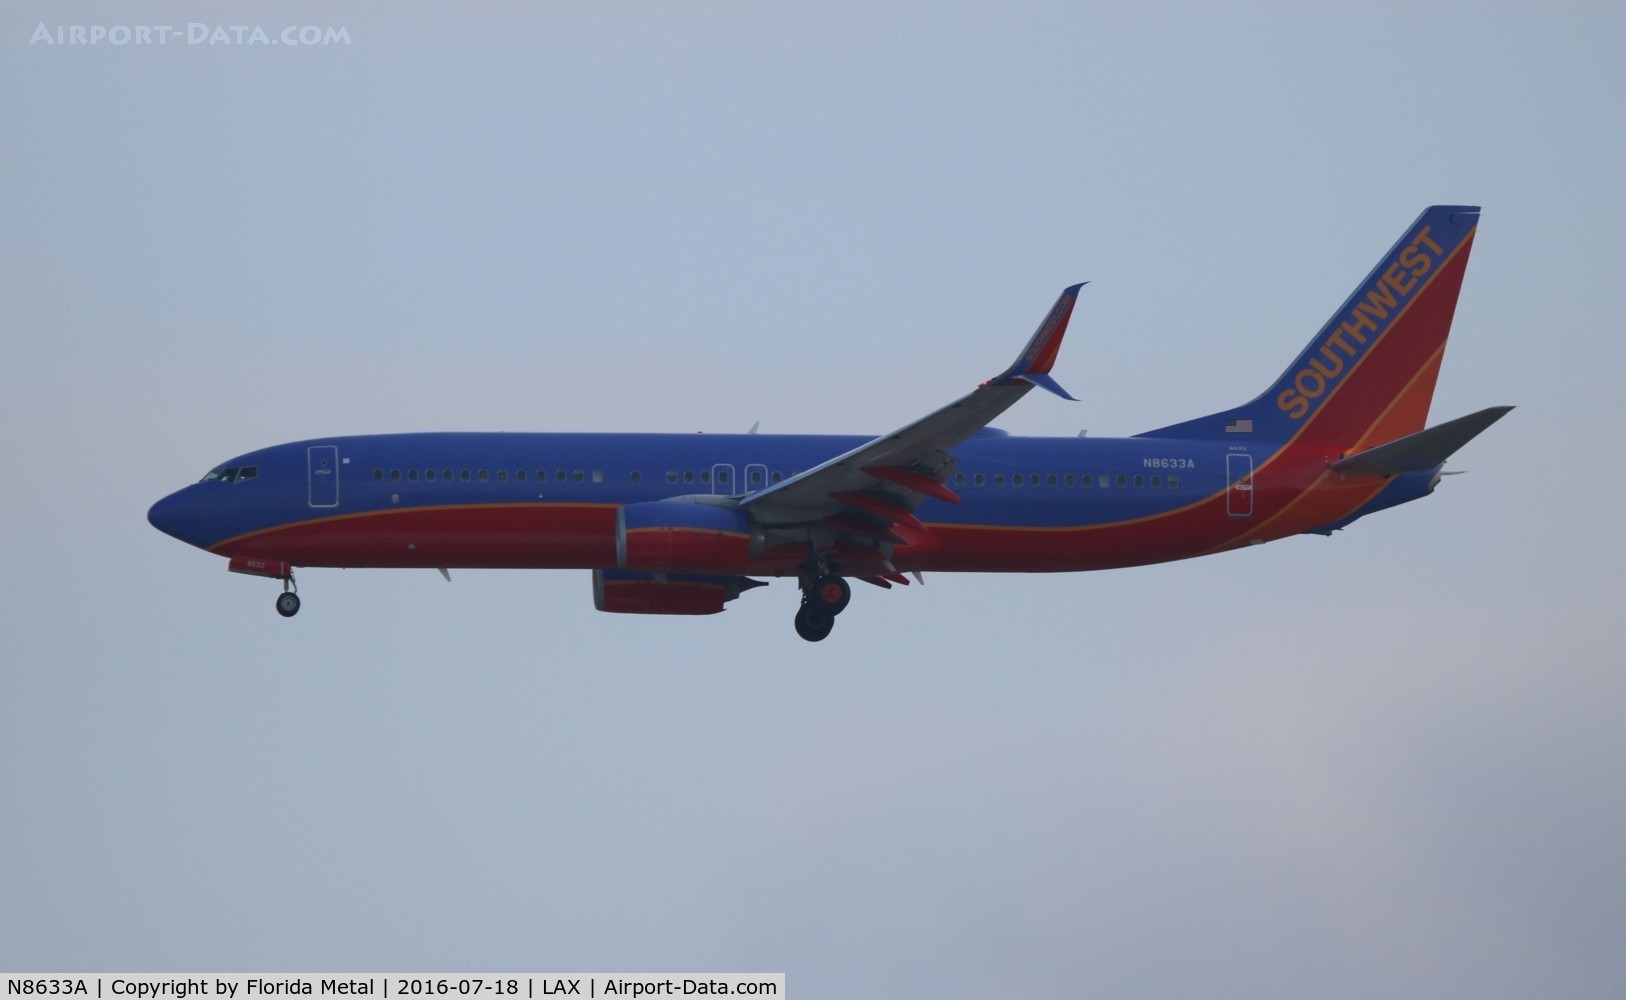 N8633A, 2014 Boeing 737-8H4 C/N 36905, Southwest